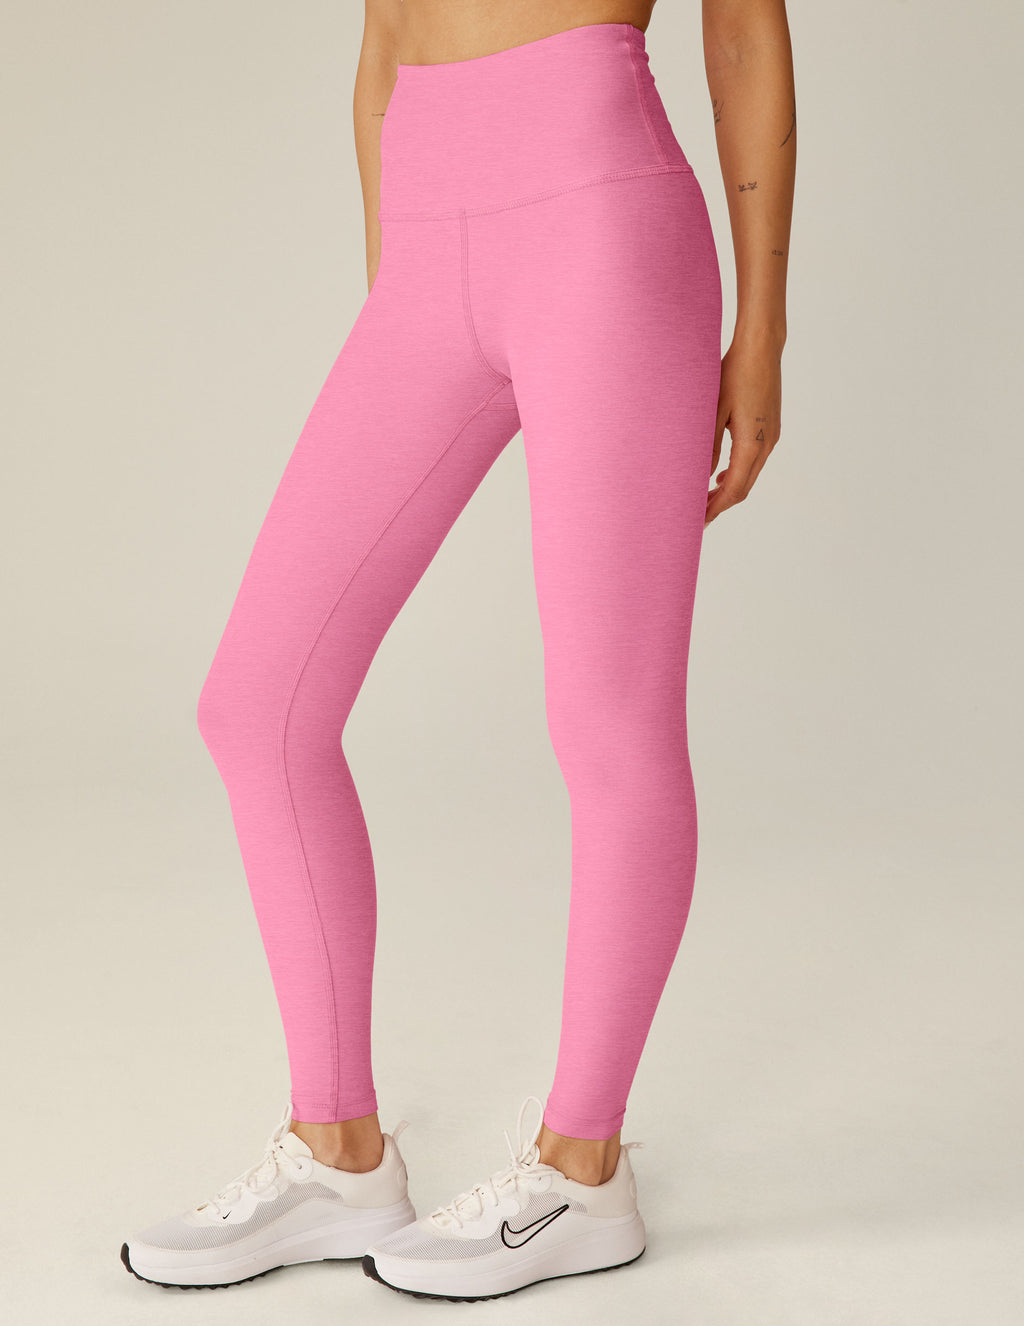 Gaiam Leggings Womens M Colorblock Mid Rise Gray Pink Capri